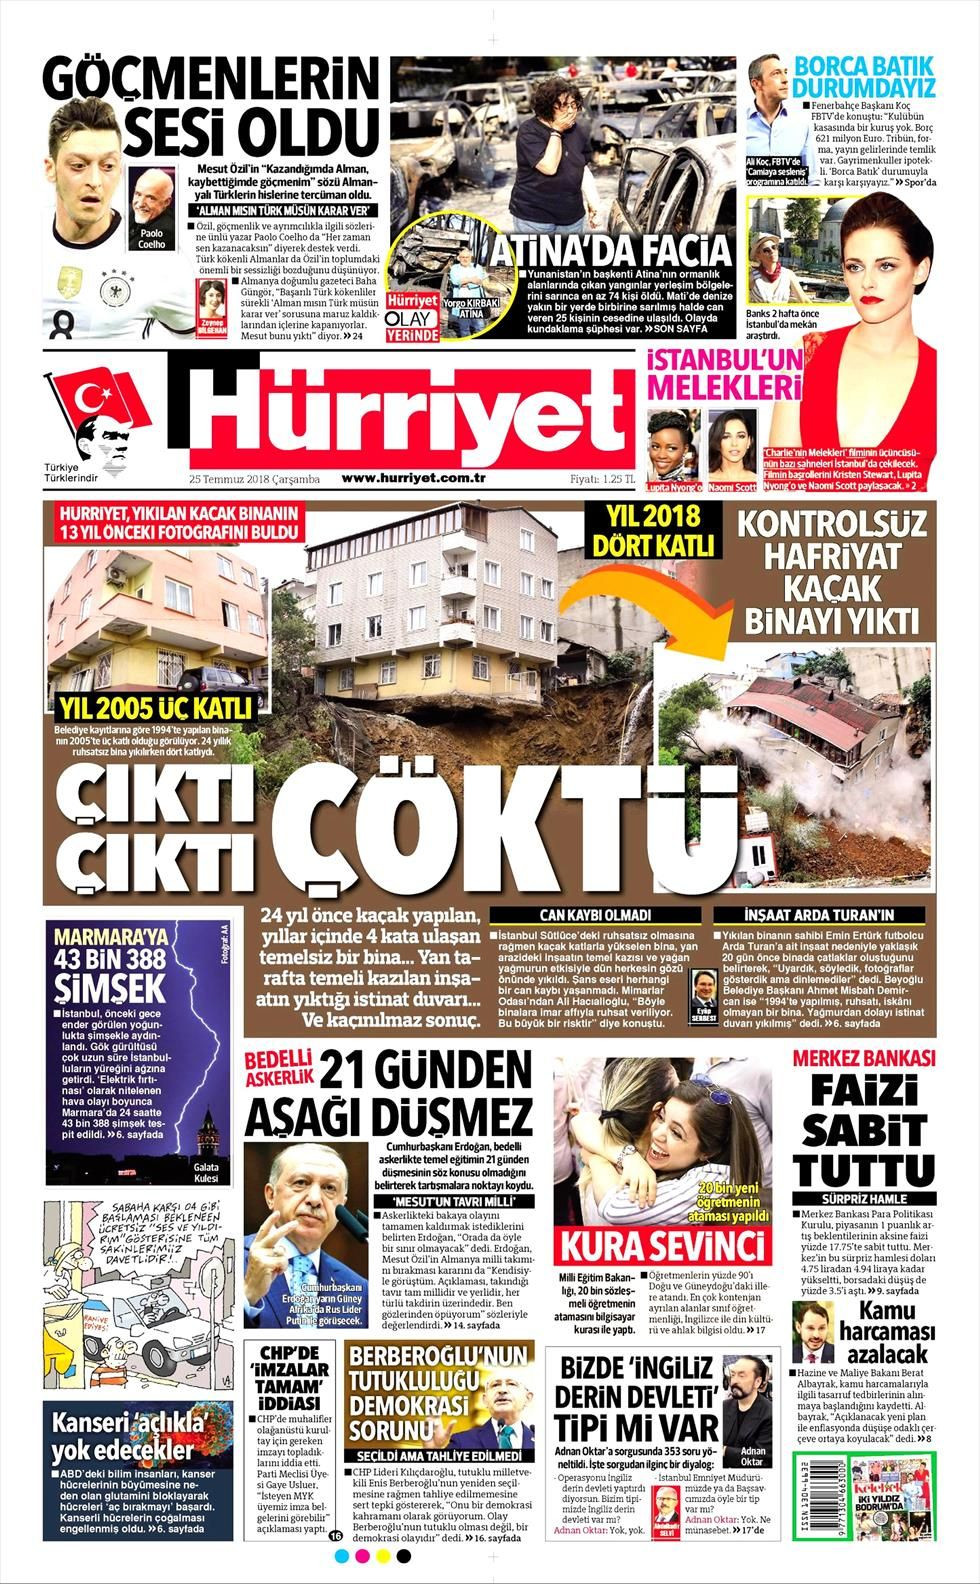 Hürriyet Gazetesi 25 Temmuz 2018 Anasayfası - Haber3